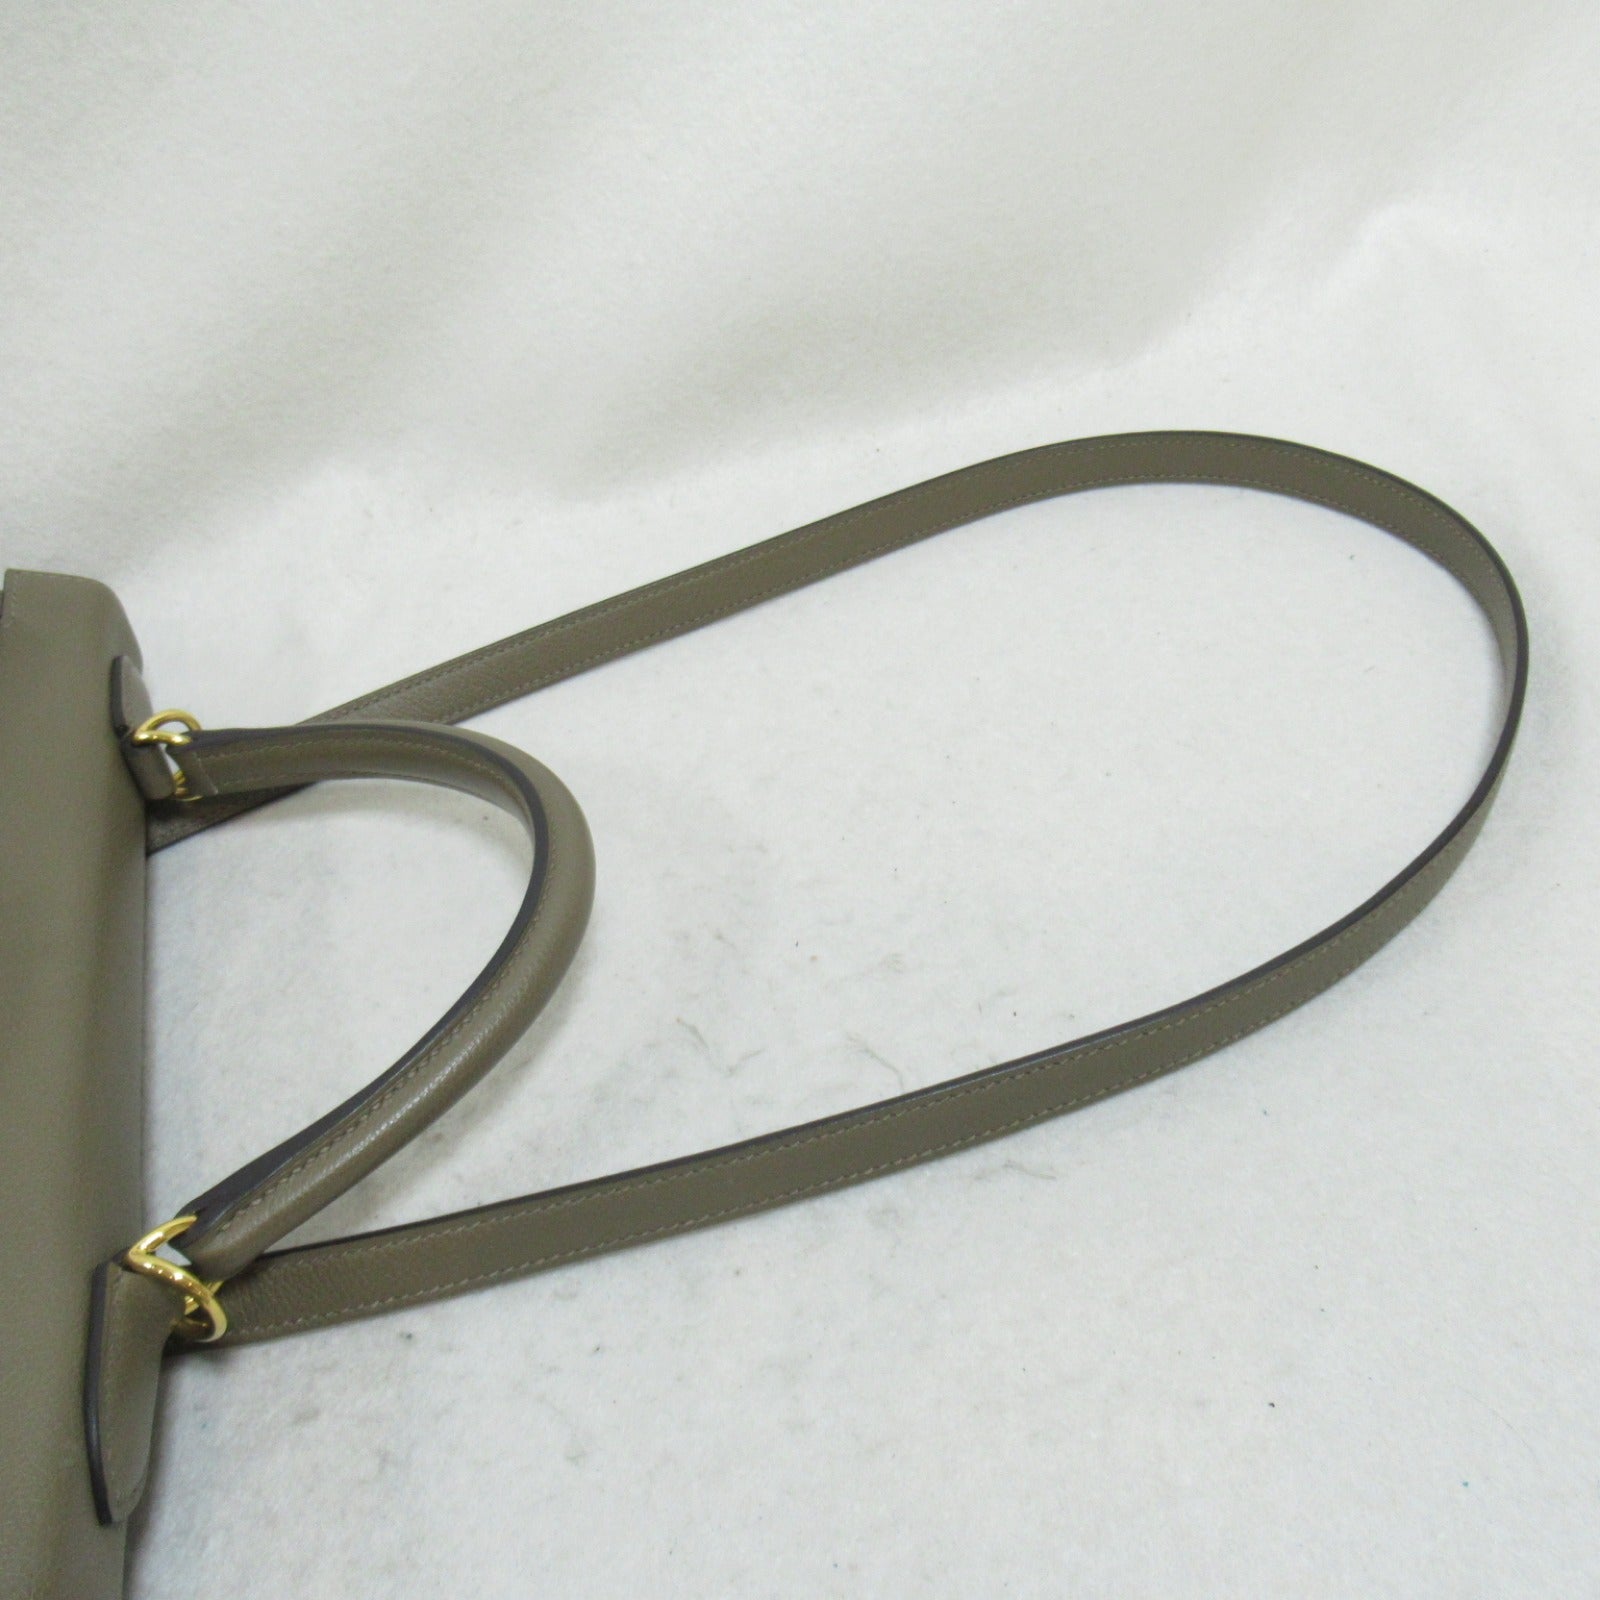 Hermes Kelly 32 Oregon In-Shift Handbag Handbag Handbag Leather Voyeur   Green